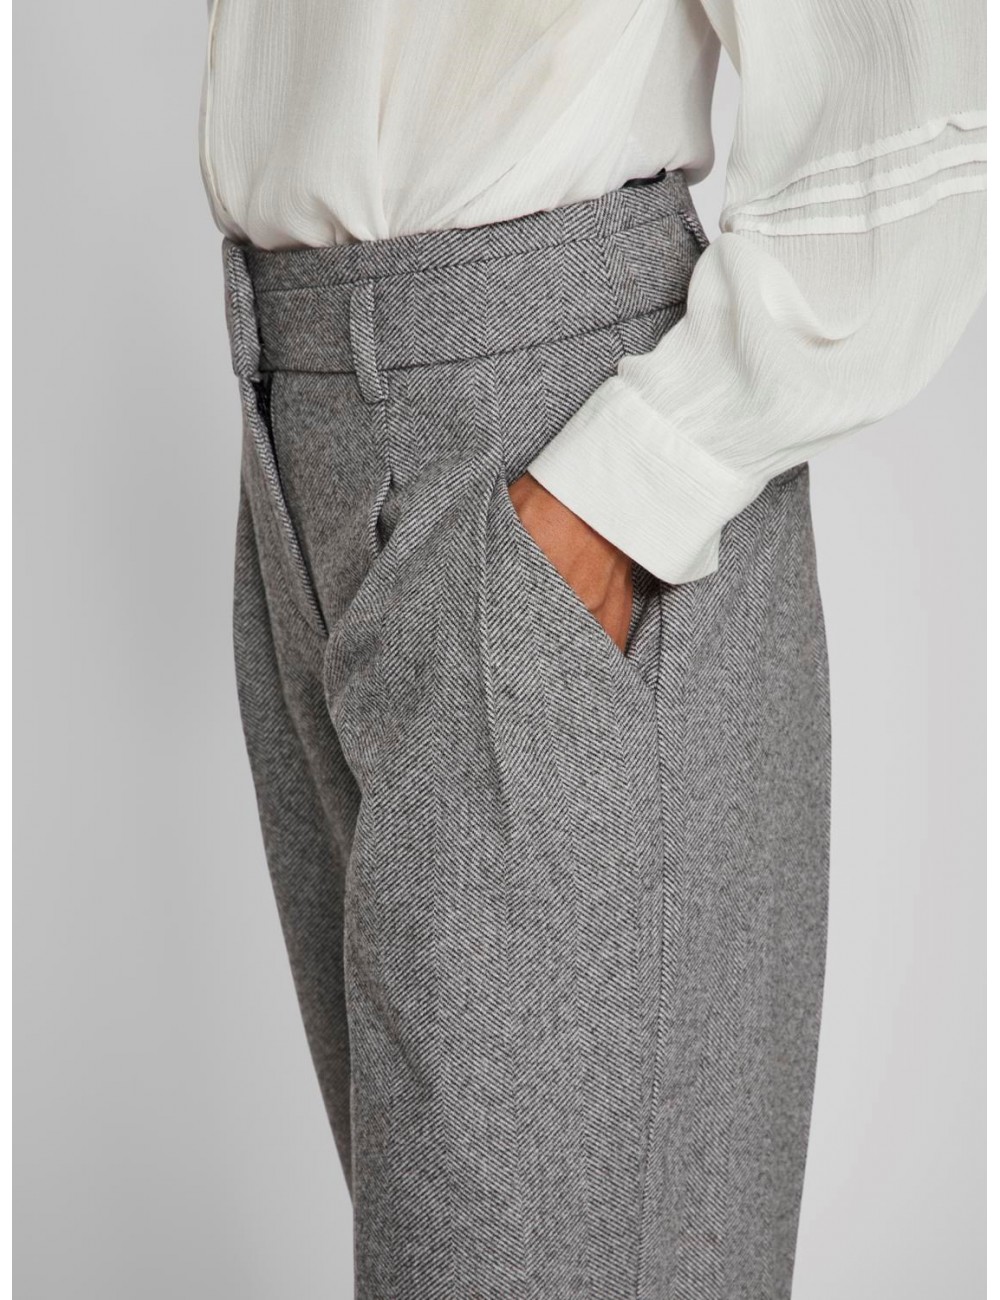 Pantalón Hybord en espiga gris. Posibilidad de comprar con Blazer para hacer el traje.